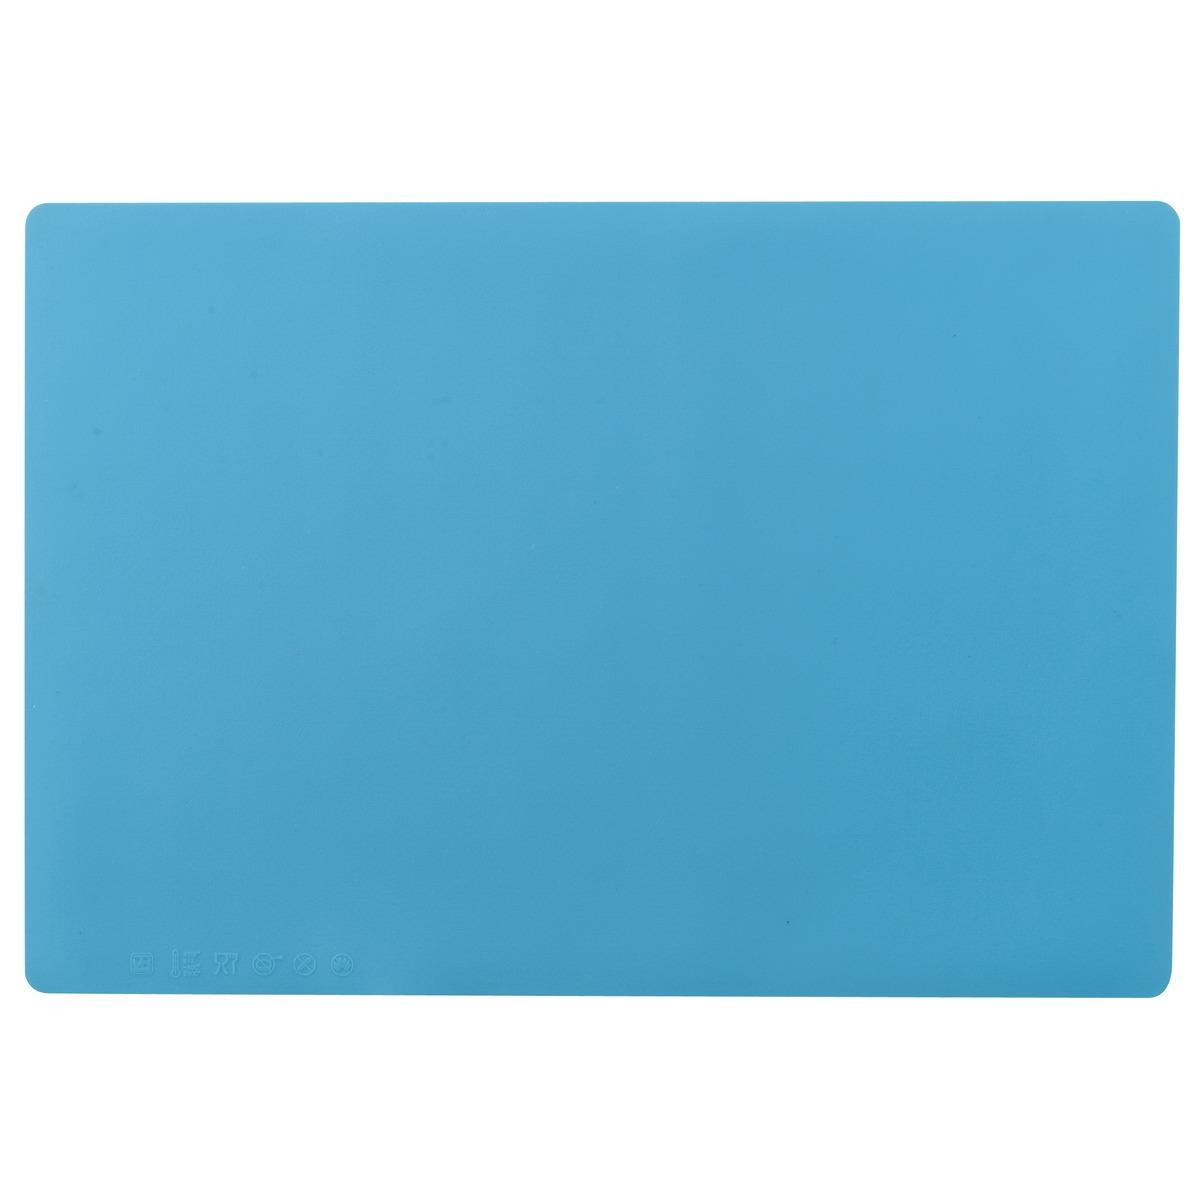 Feuille de cuisson en silicone - plaque 35 x 24 cm - Bleu